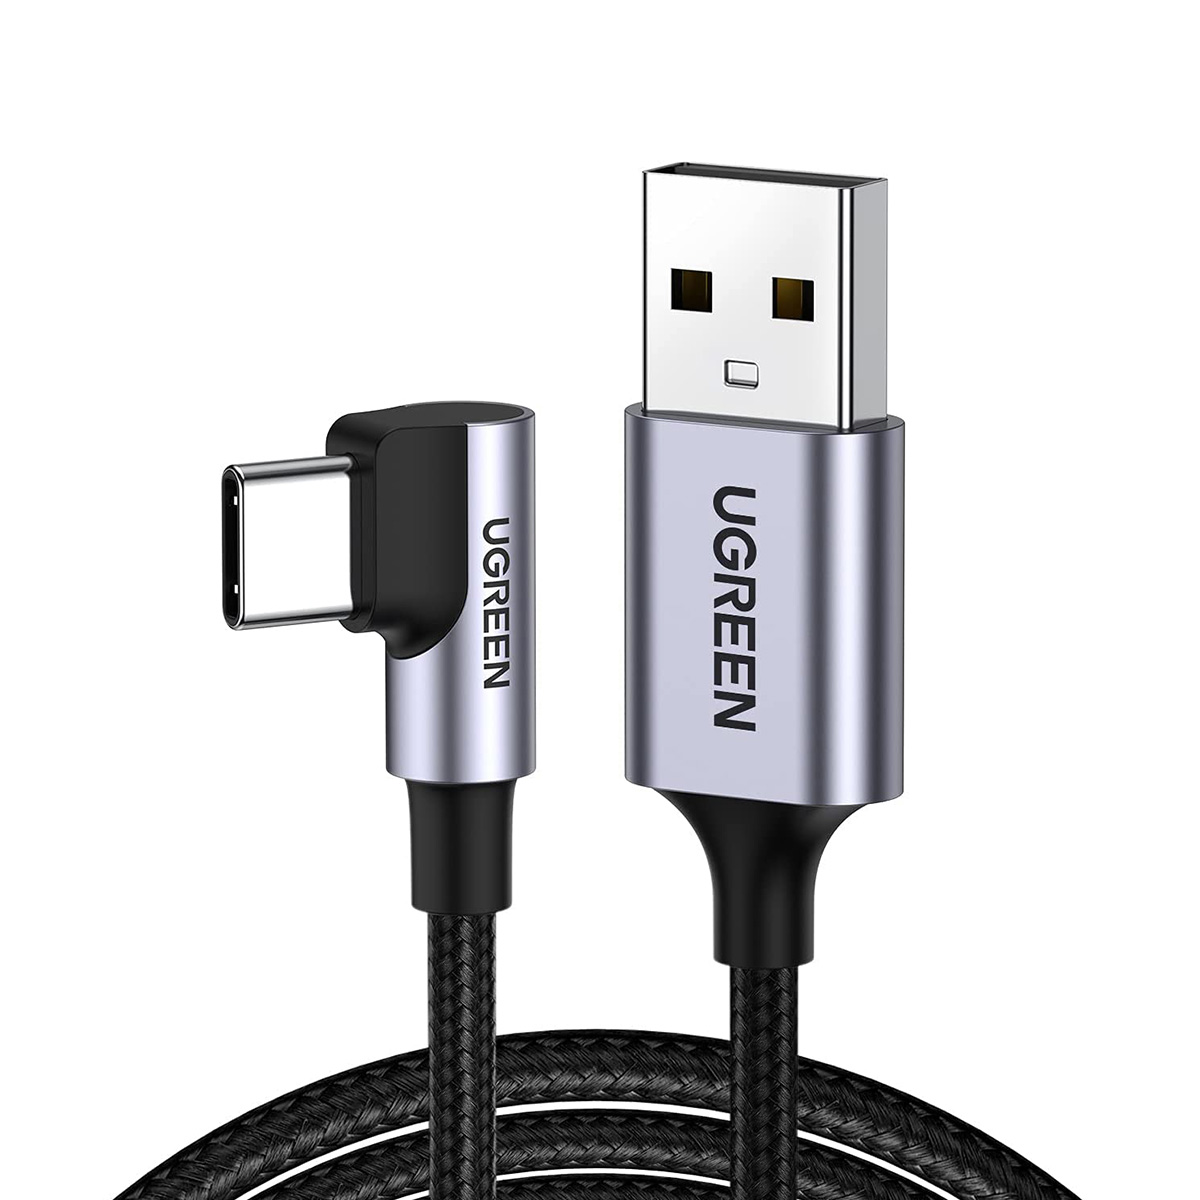 ■ USB-C (オス) To USB 2.0 A (オス) 3A データケーブル (L字型タイプ) 3m